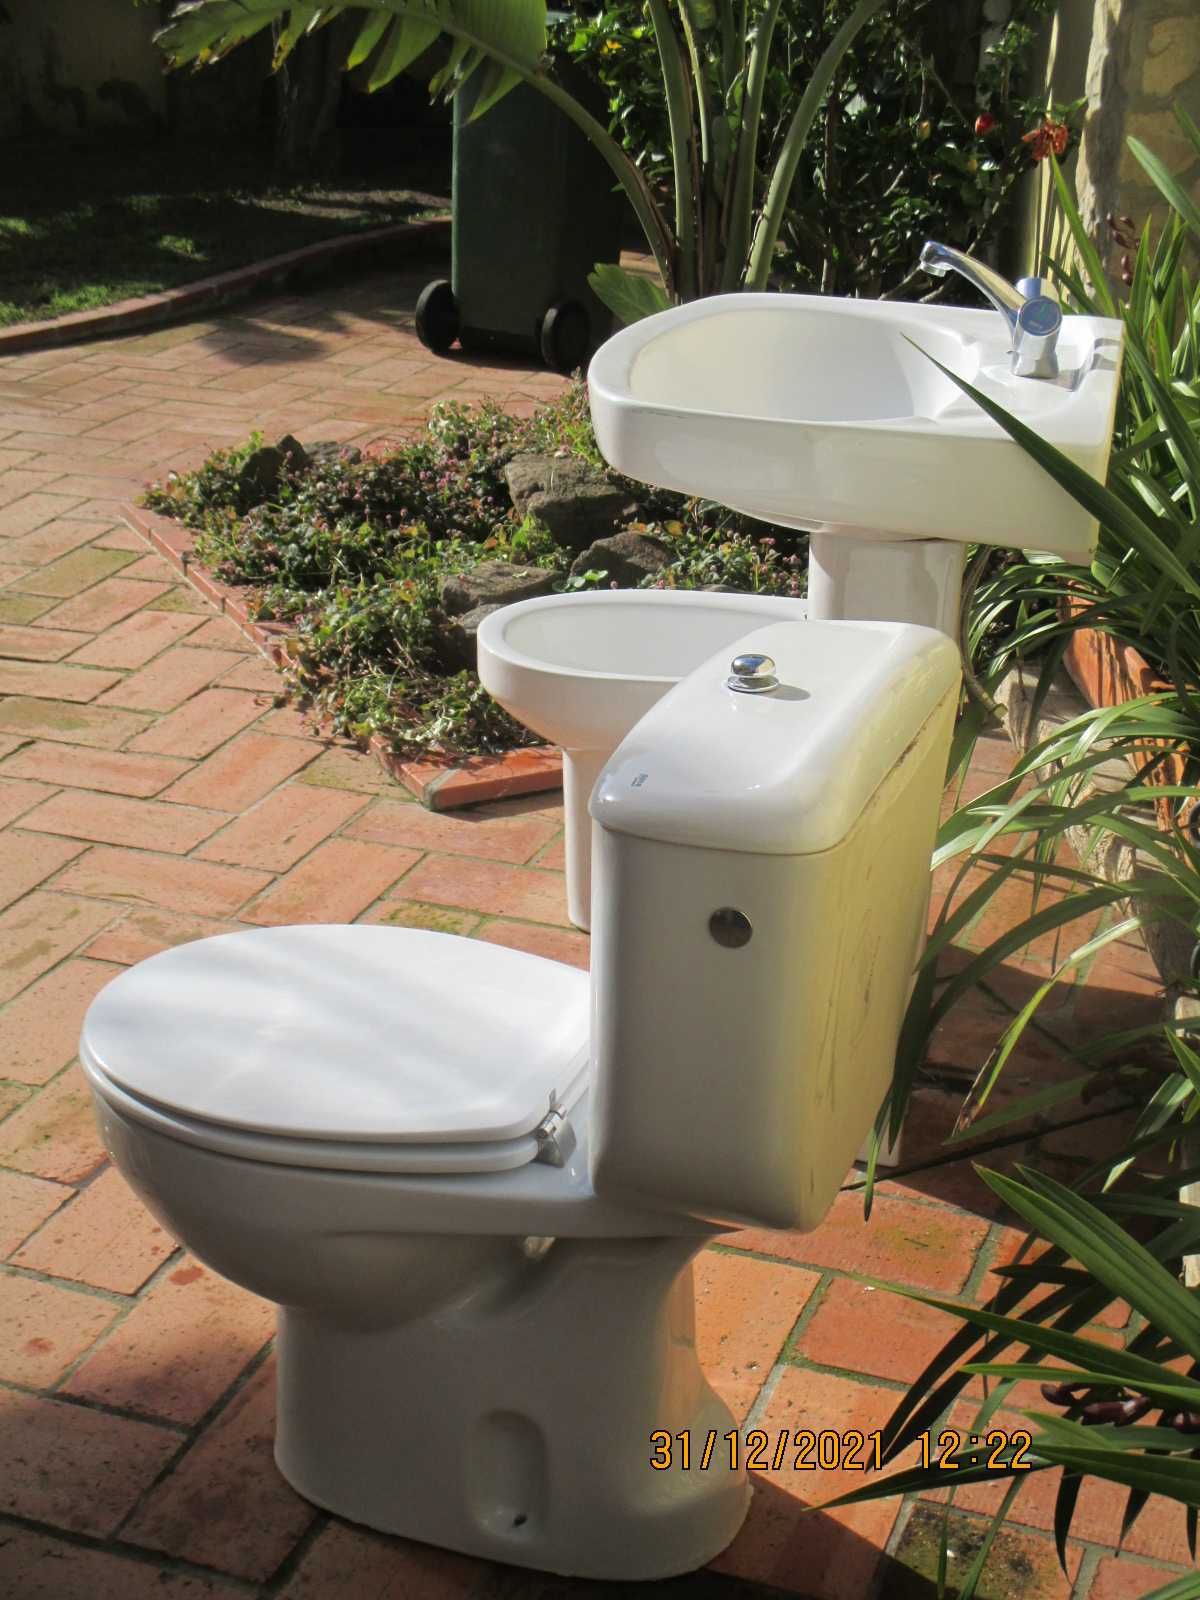 Louças sanitárias e torneiras - WC - Roca Vitória conjunto ou separado